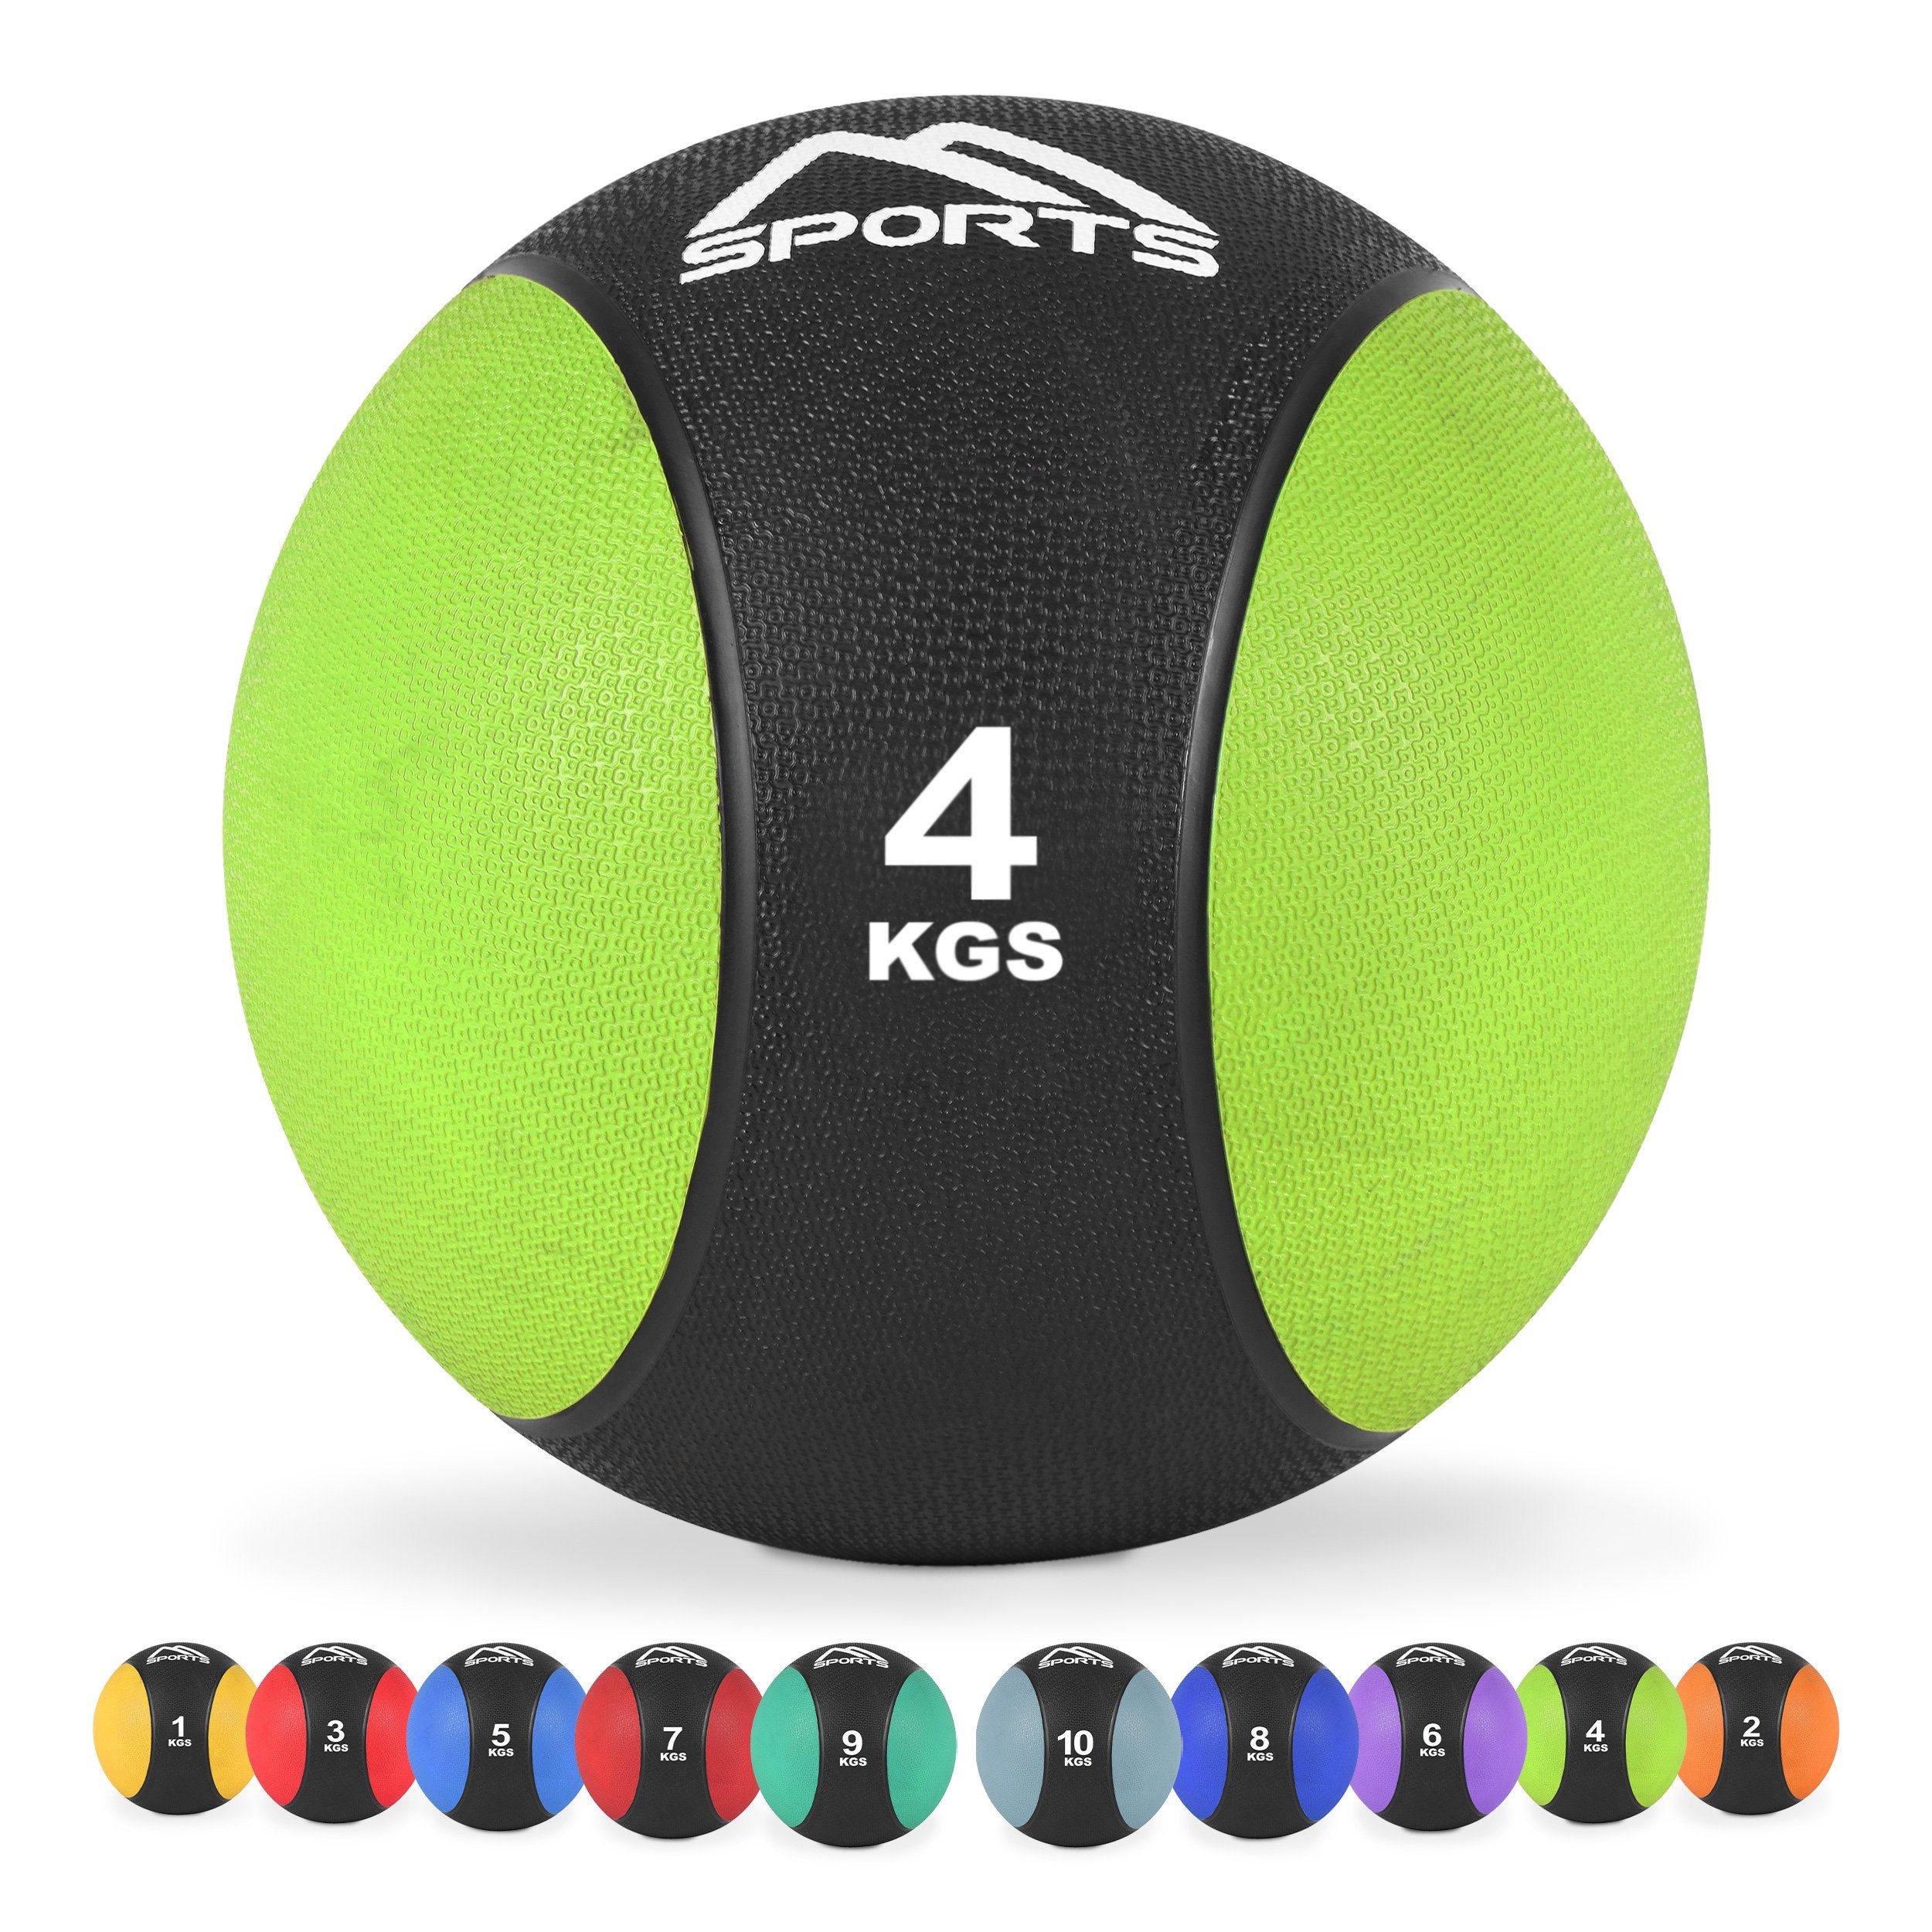 MSports® Medizinball Medizinball 1 – 10 kg – inkl. Übungsposter 4 kg - Grün